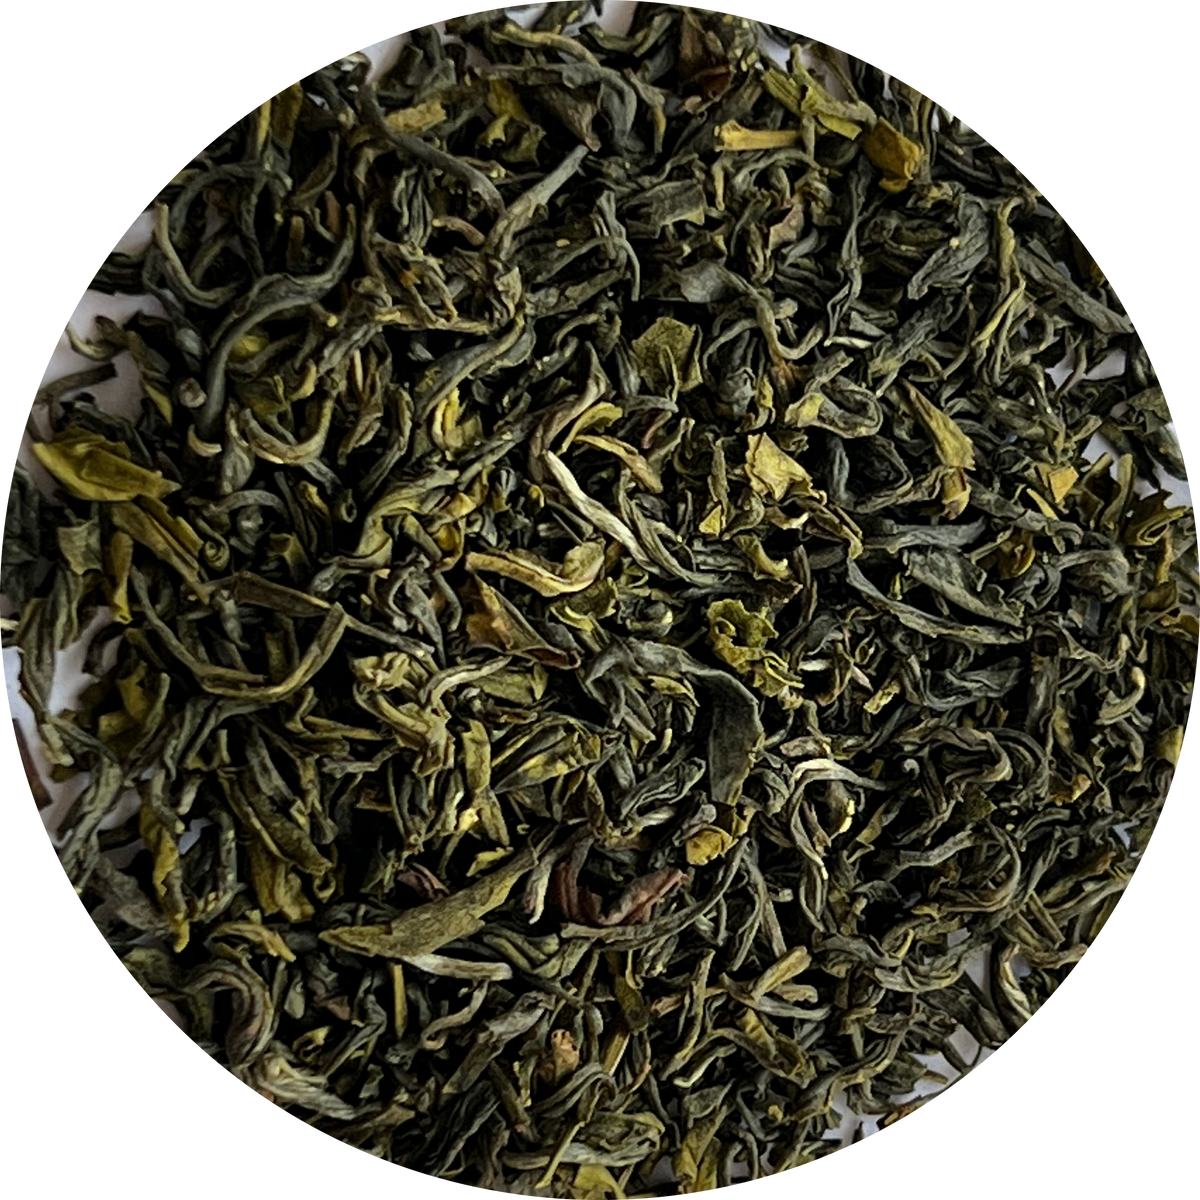 Sample pack (Leaf tea)